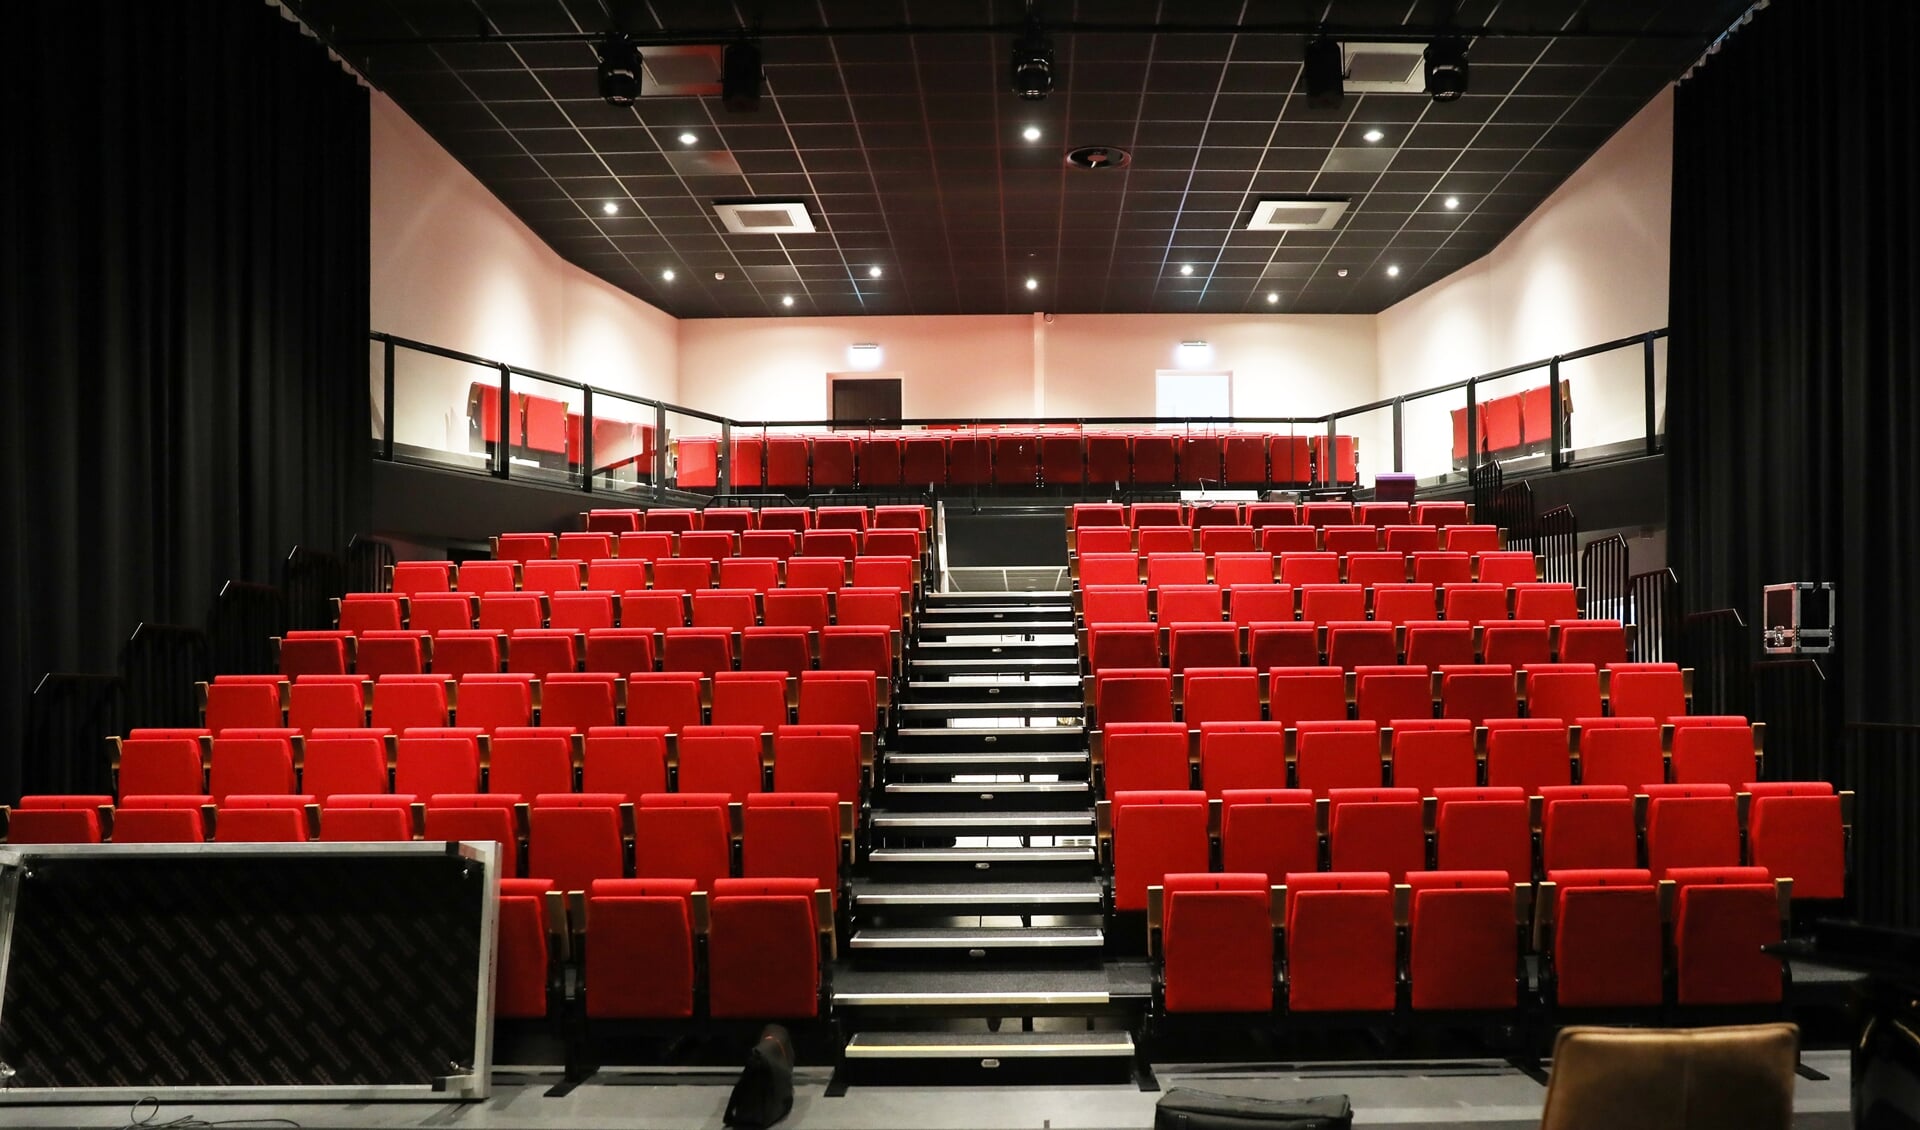 De zaal heeft plek voor tweehonderd man publiek en biedt de mogelijkheid voor theatervoorstellingen, lezingen en andere culturele bijeenkomsten.